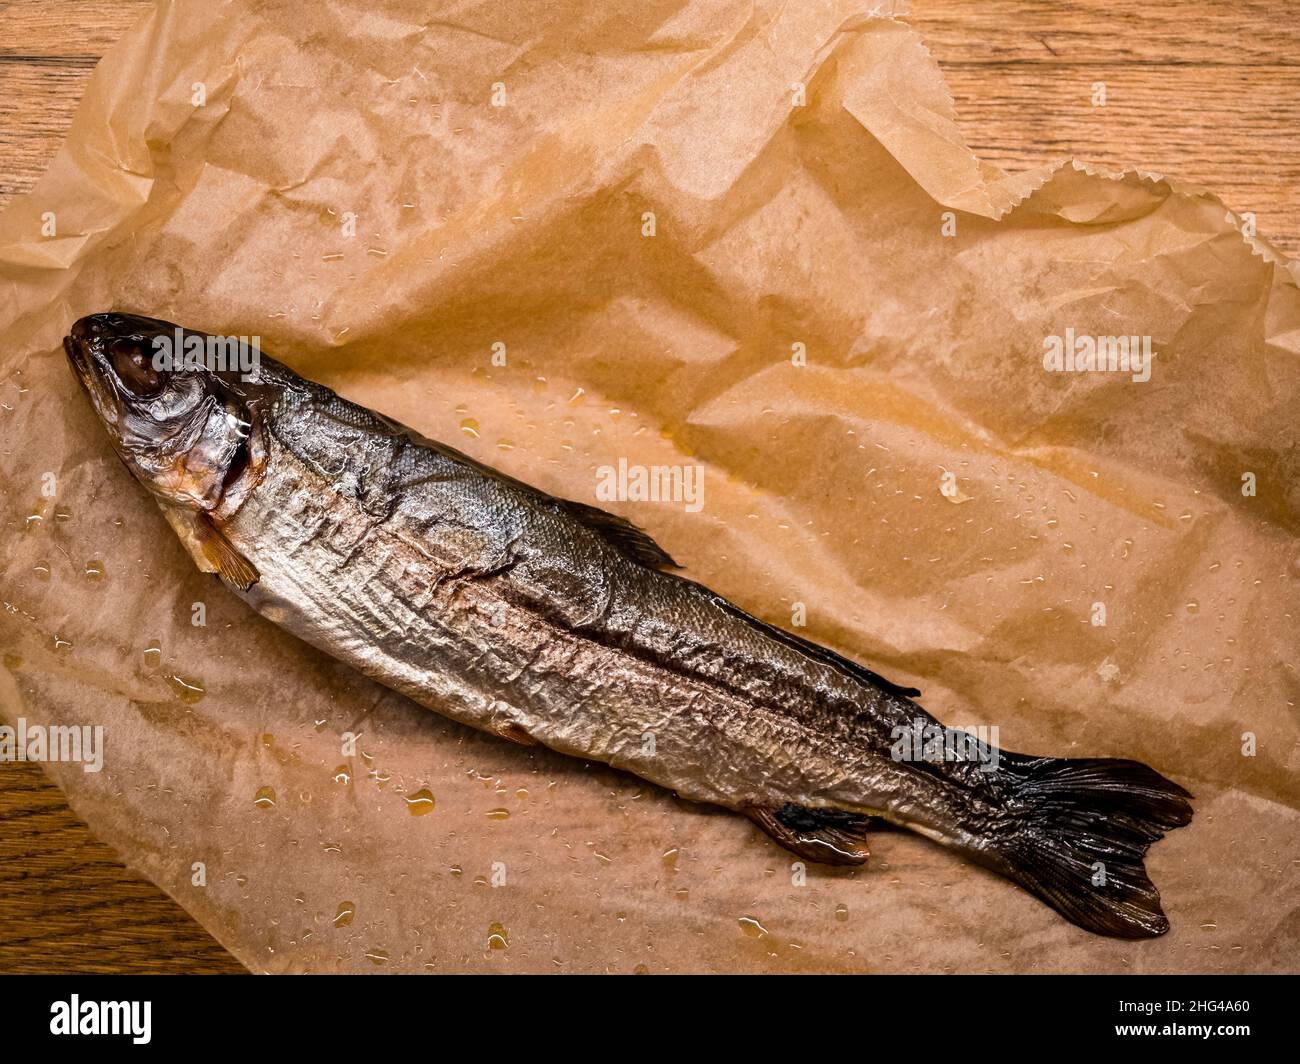 Geräucherter Fisch auf Papier, Draufsicht. Kalt geräucherter Forellenfisch mit Gewürzen, leckere Fischvorspeise Stockfoto